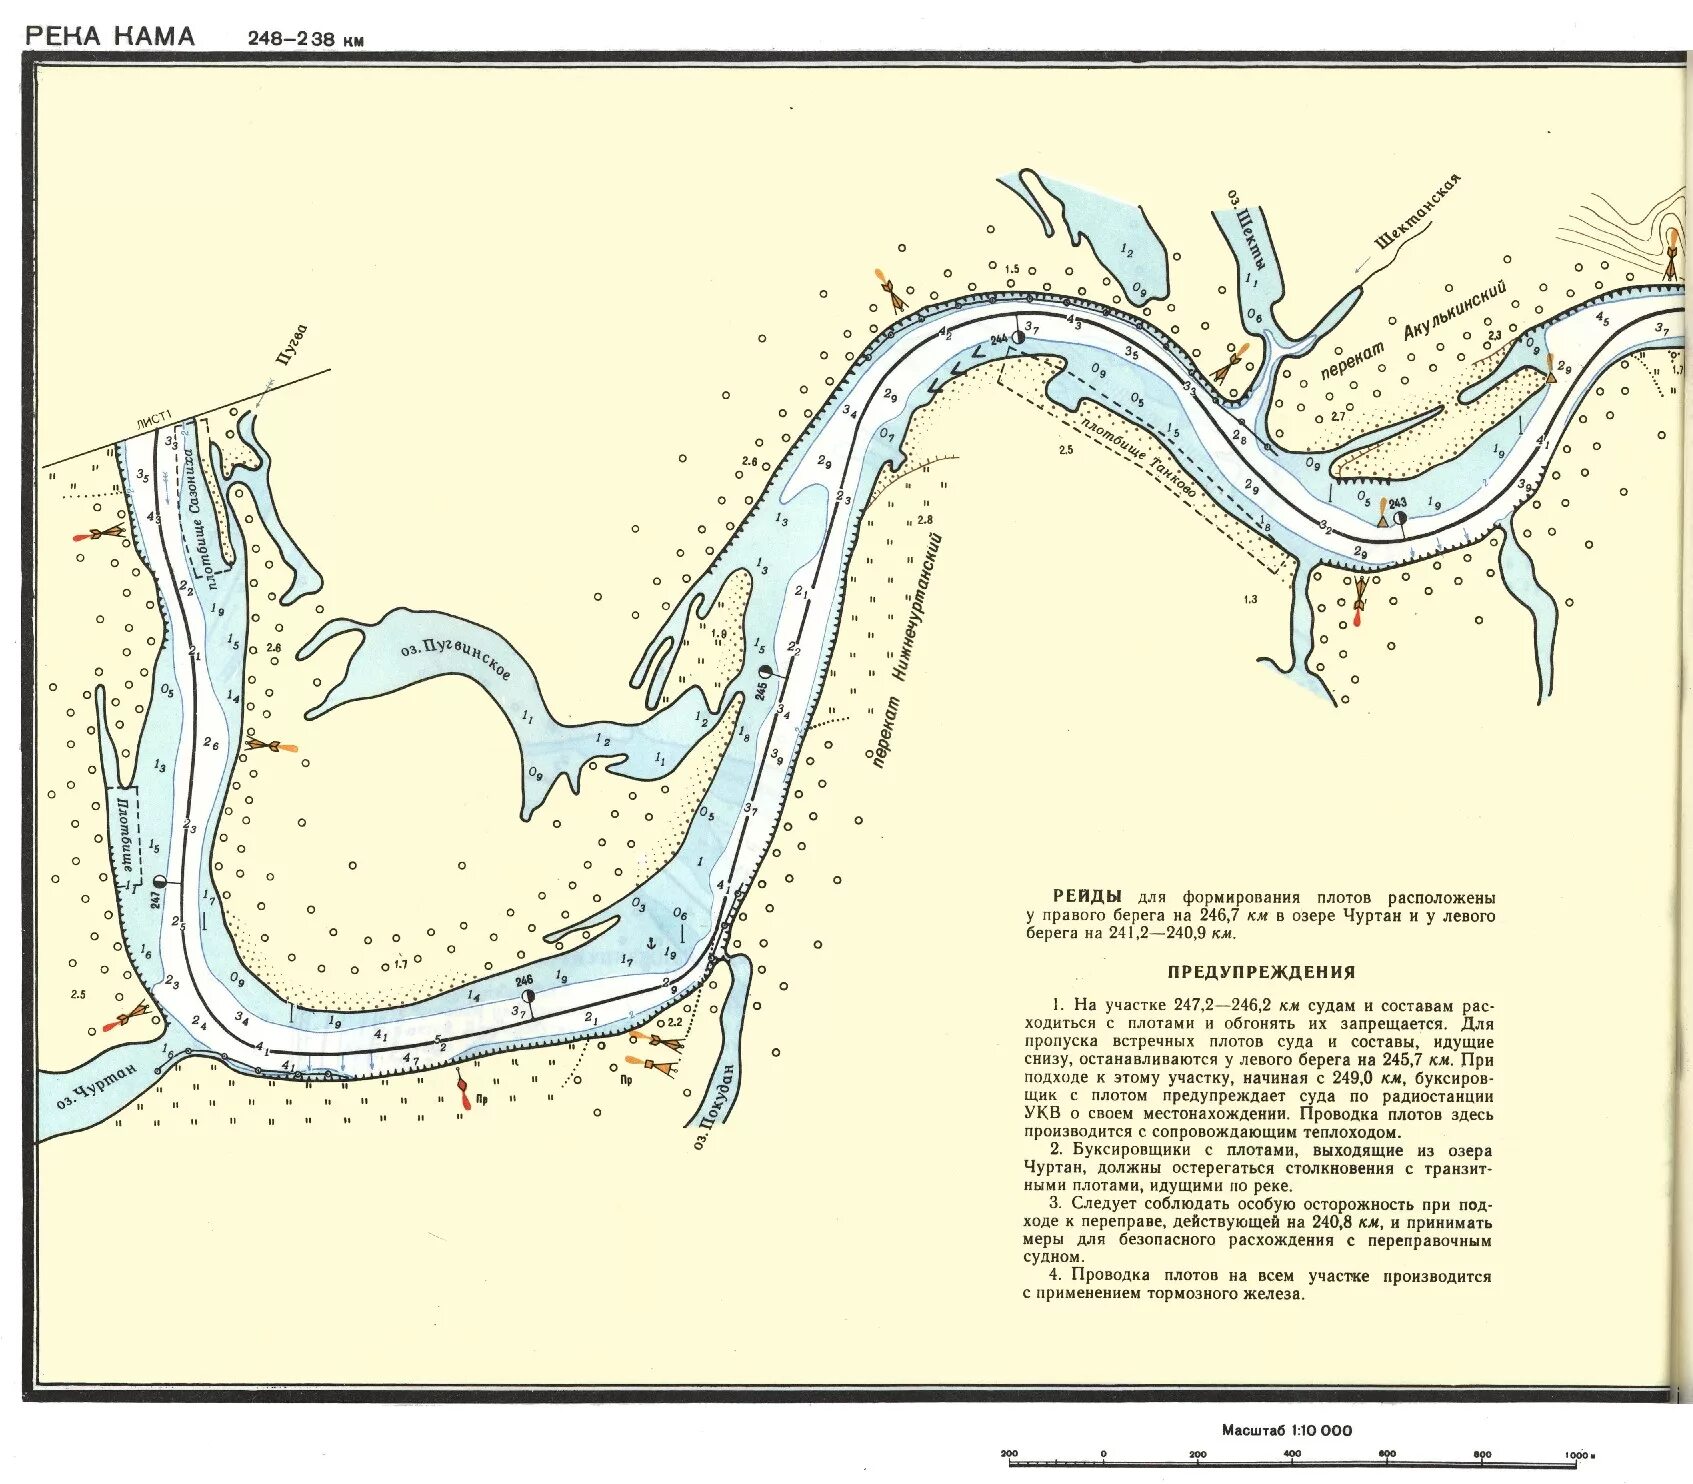 Изменение движения рек. Направление течения реки Кама на карте. Течение реки Кама на карте. Схема течения реки Кама. Схема реки Кама в Перми.